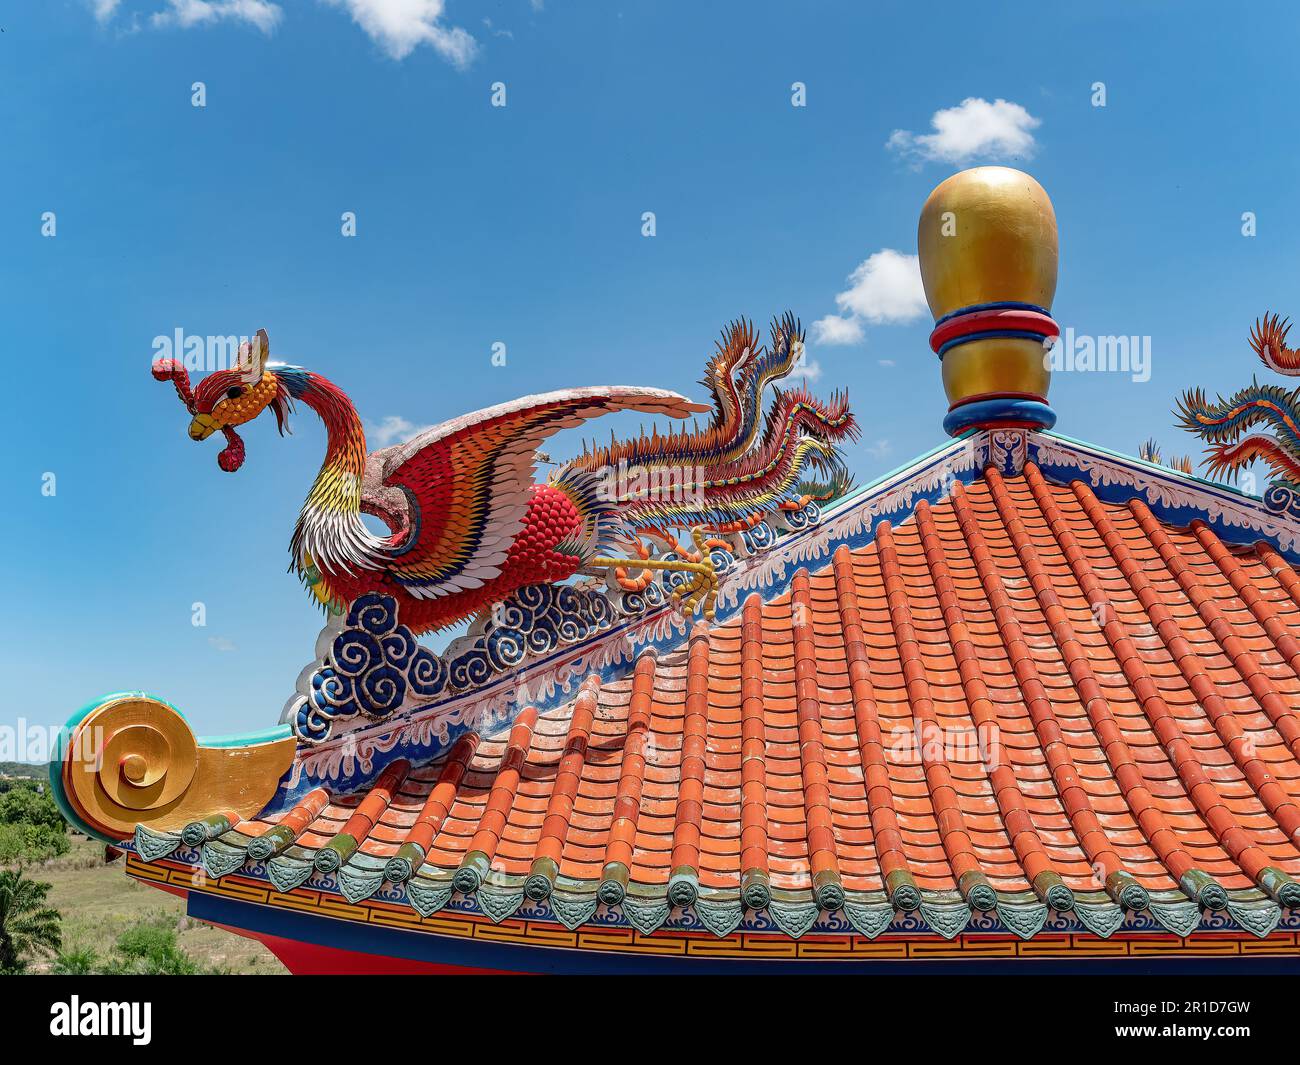 Dachdetails von Viharn Sien, einem chinesisch-thailändischen Museum und Schrein nahe Wat Yan in Huai Yai, nahe Pattaya, Chonburi Provinz Thailand. Der Vogel ist mein Stockfoto